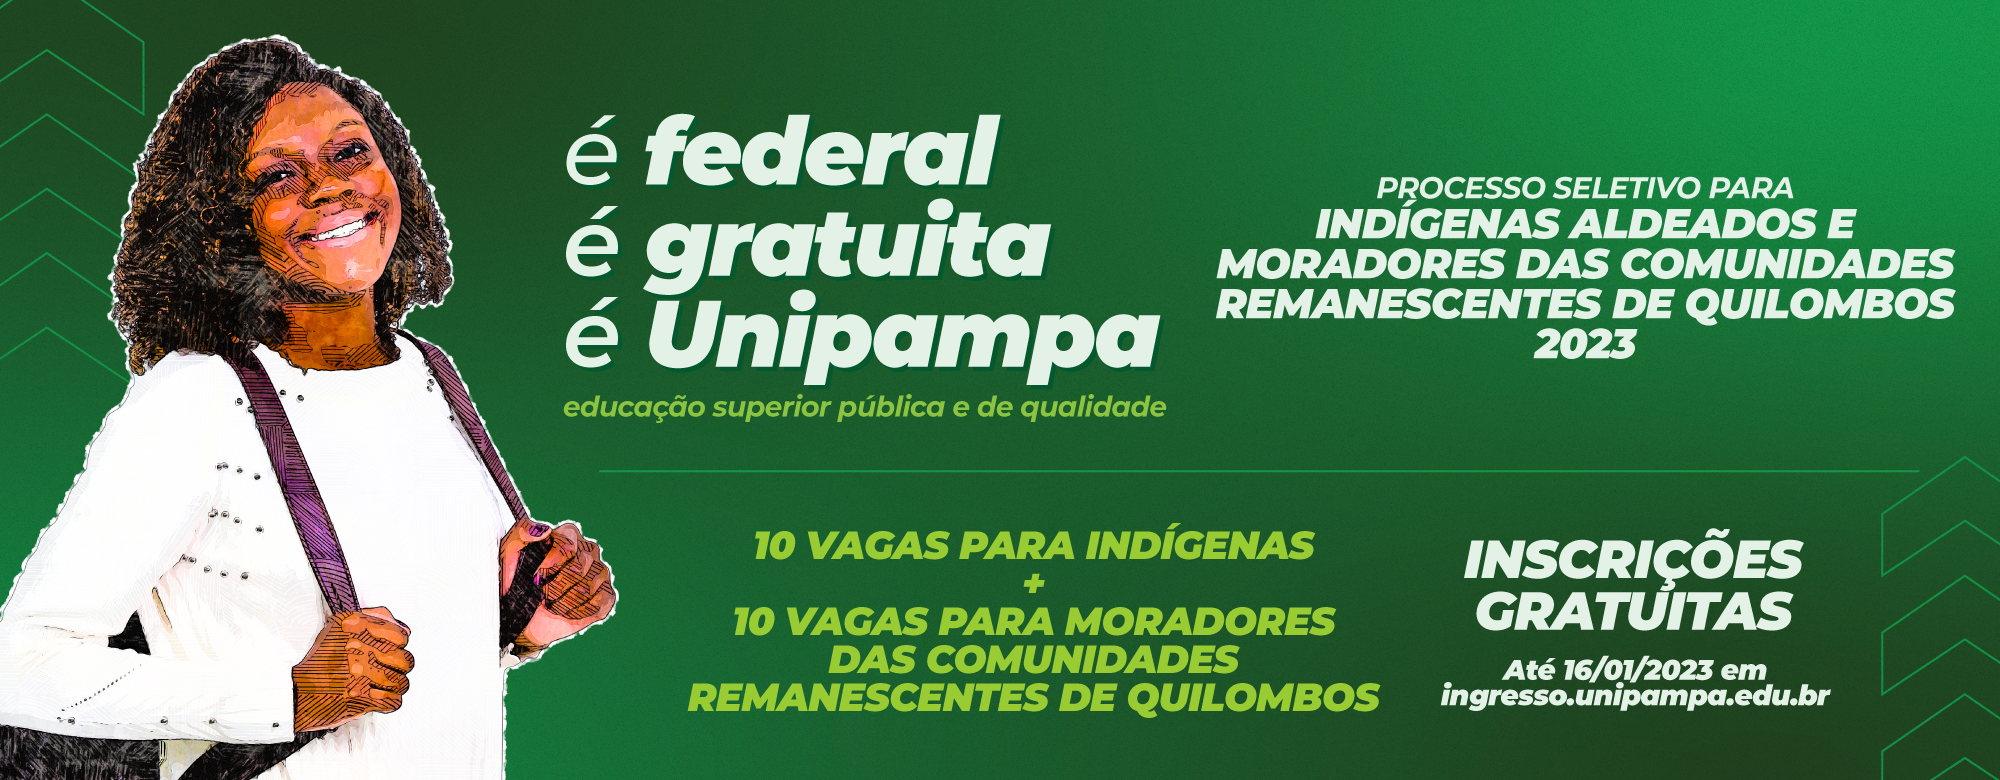 Banner com fundo verde do processo seletivo para indígenas aldeados e moradores de comunidades quilombolas